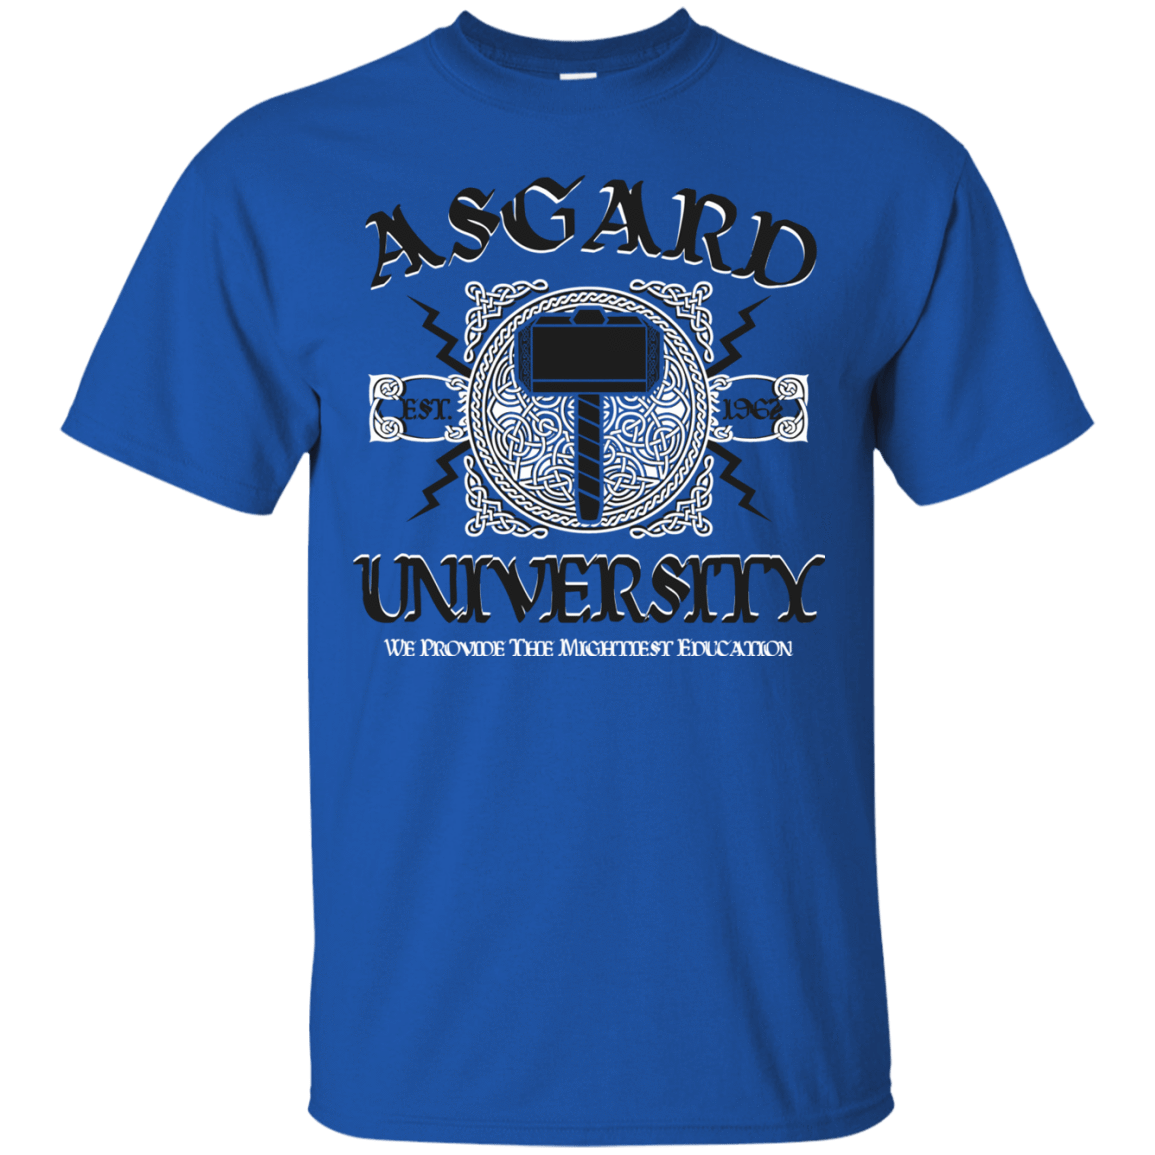 T-Shirts Royal / Small Asgard University T-Shirt